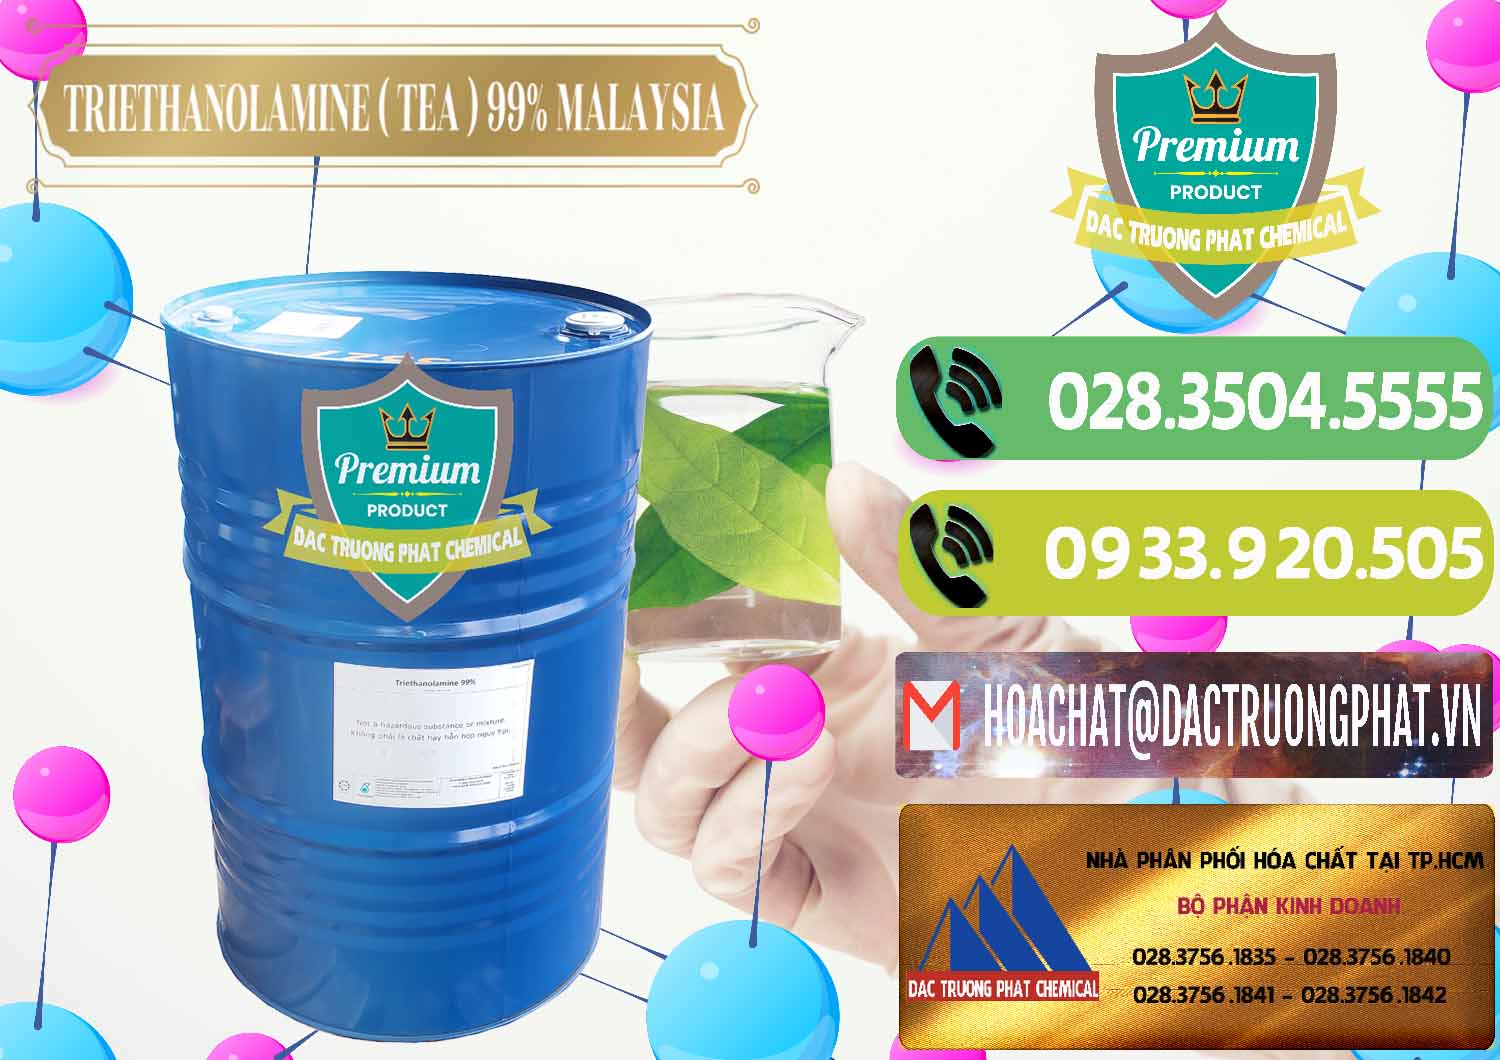 Cty chuyên bán - phân phối TEA - Triethanolamine 99% Mã Lai Malaysia - 0323 - Đơn vị phân phối ( cung cấp ) hóa chất tại TP.HCM - hoachatmientay.vn